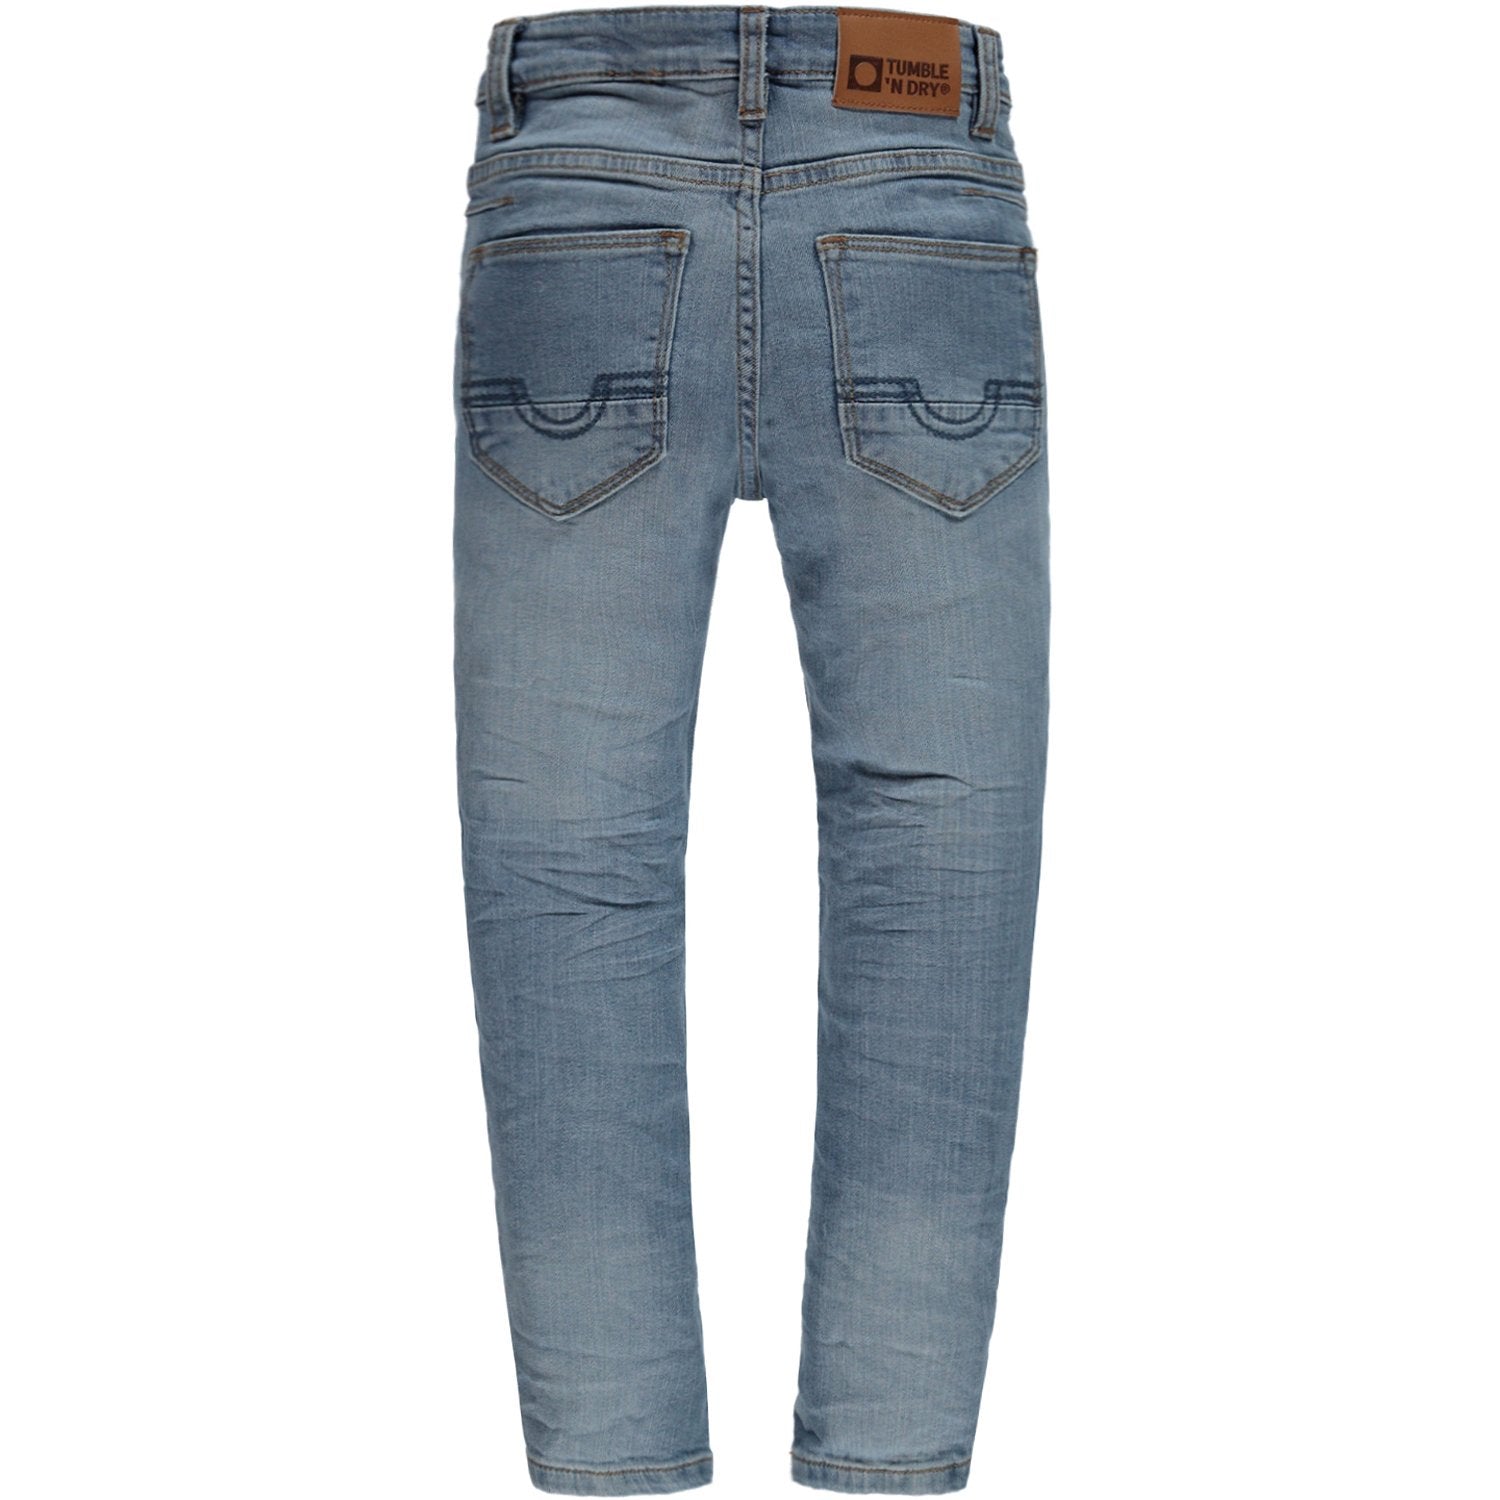 Jongens Broek Jeans lang van Tumble 'n Dry in de kleur Denim medium used in maat 128.